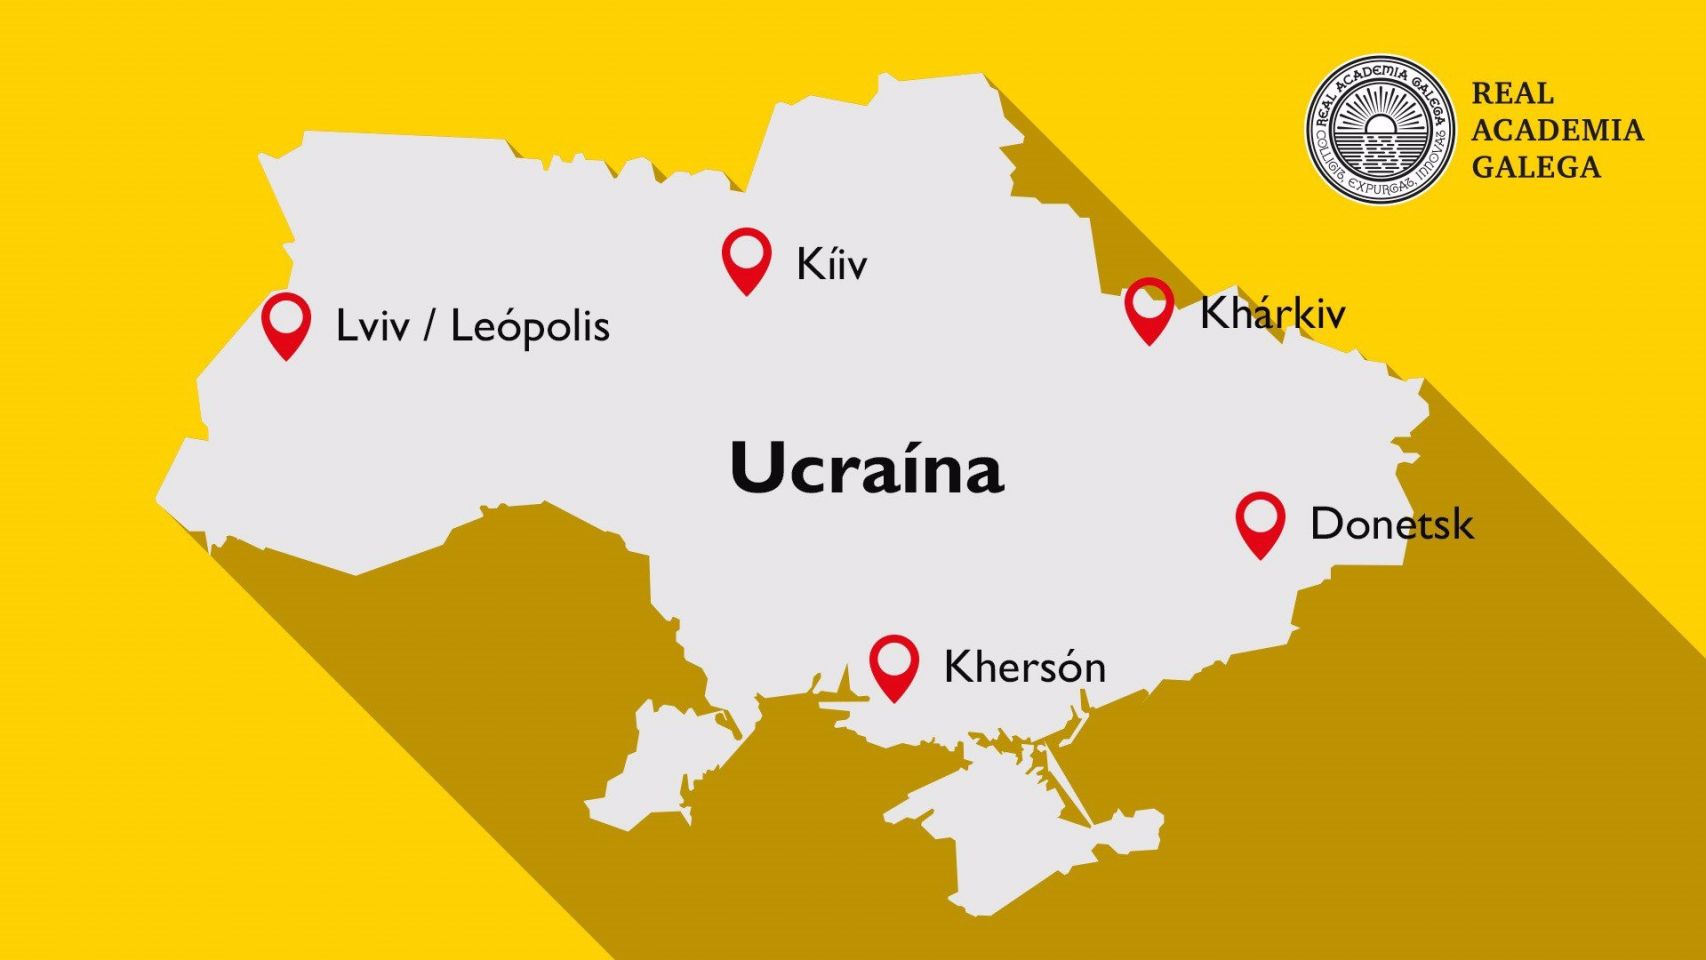 Mapa de la RAG con los nombres de las principales ciudades ucranianas escritos en su forma gallega.